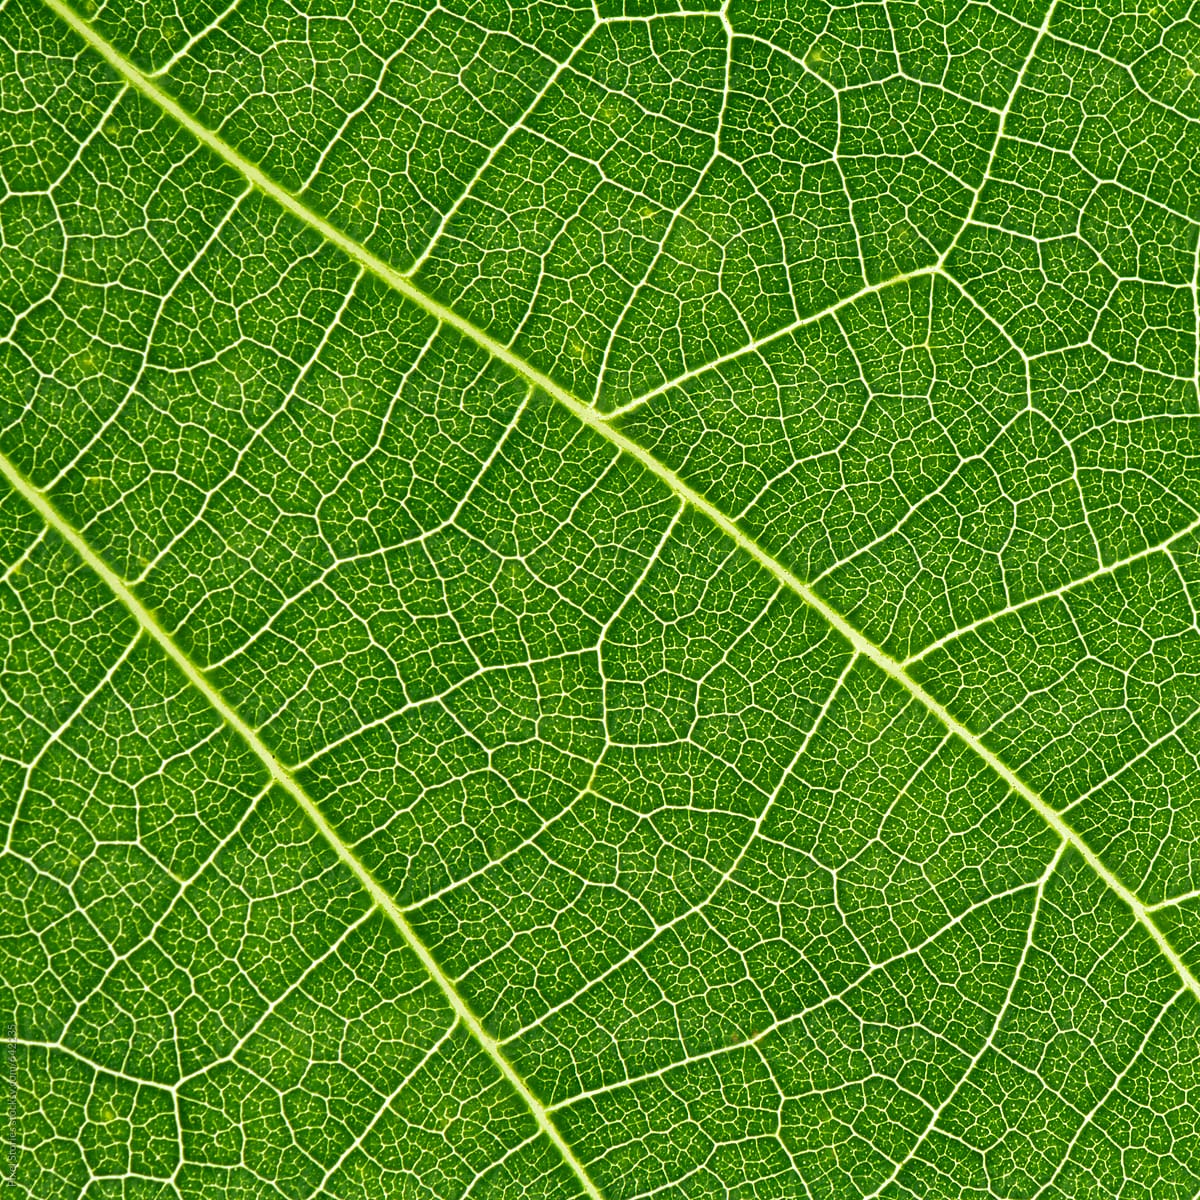 Leaf details